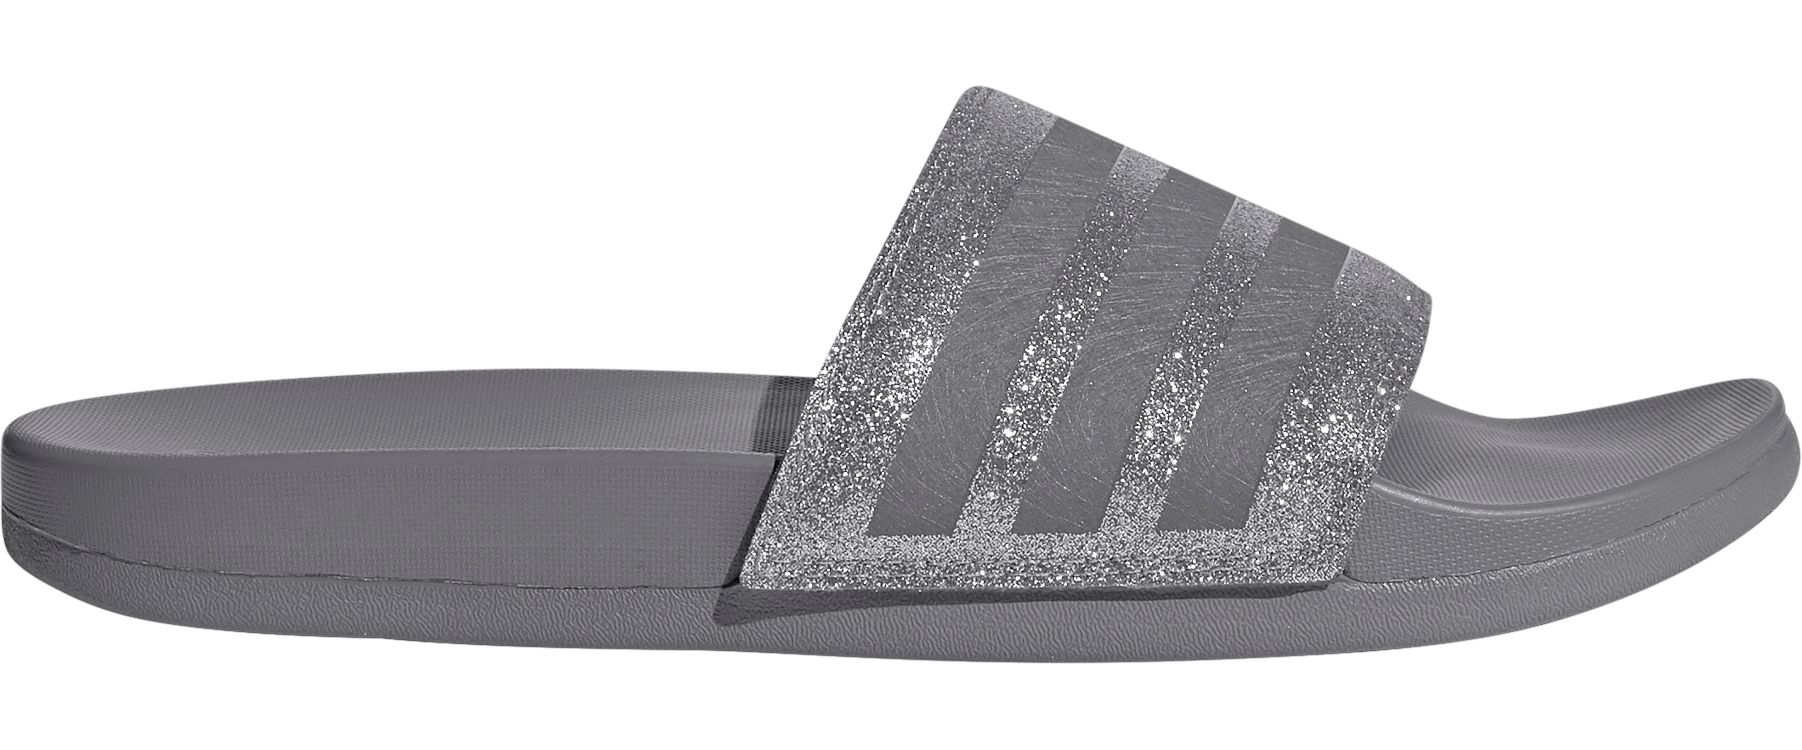 adidas adilette metallic slide